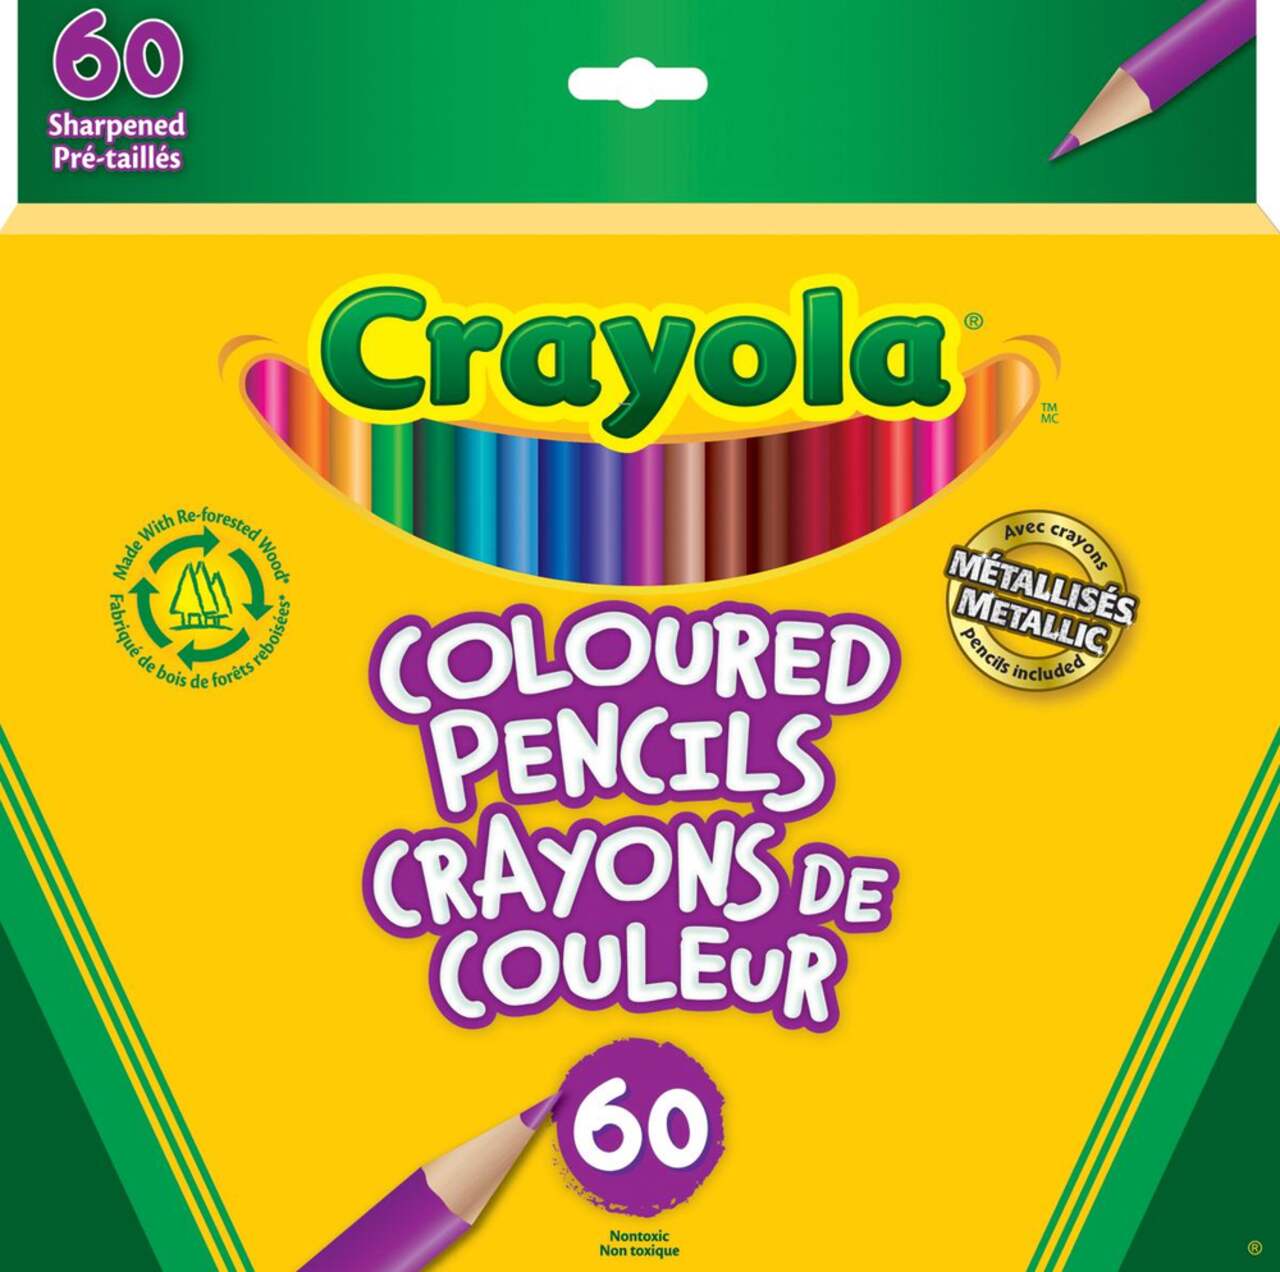 Acheter Crayons de couleur Multicolore ? Bon et bon marché